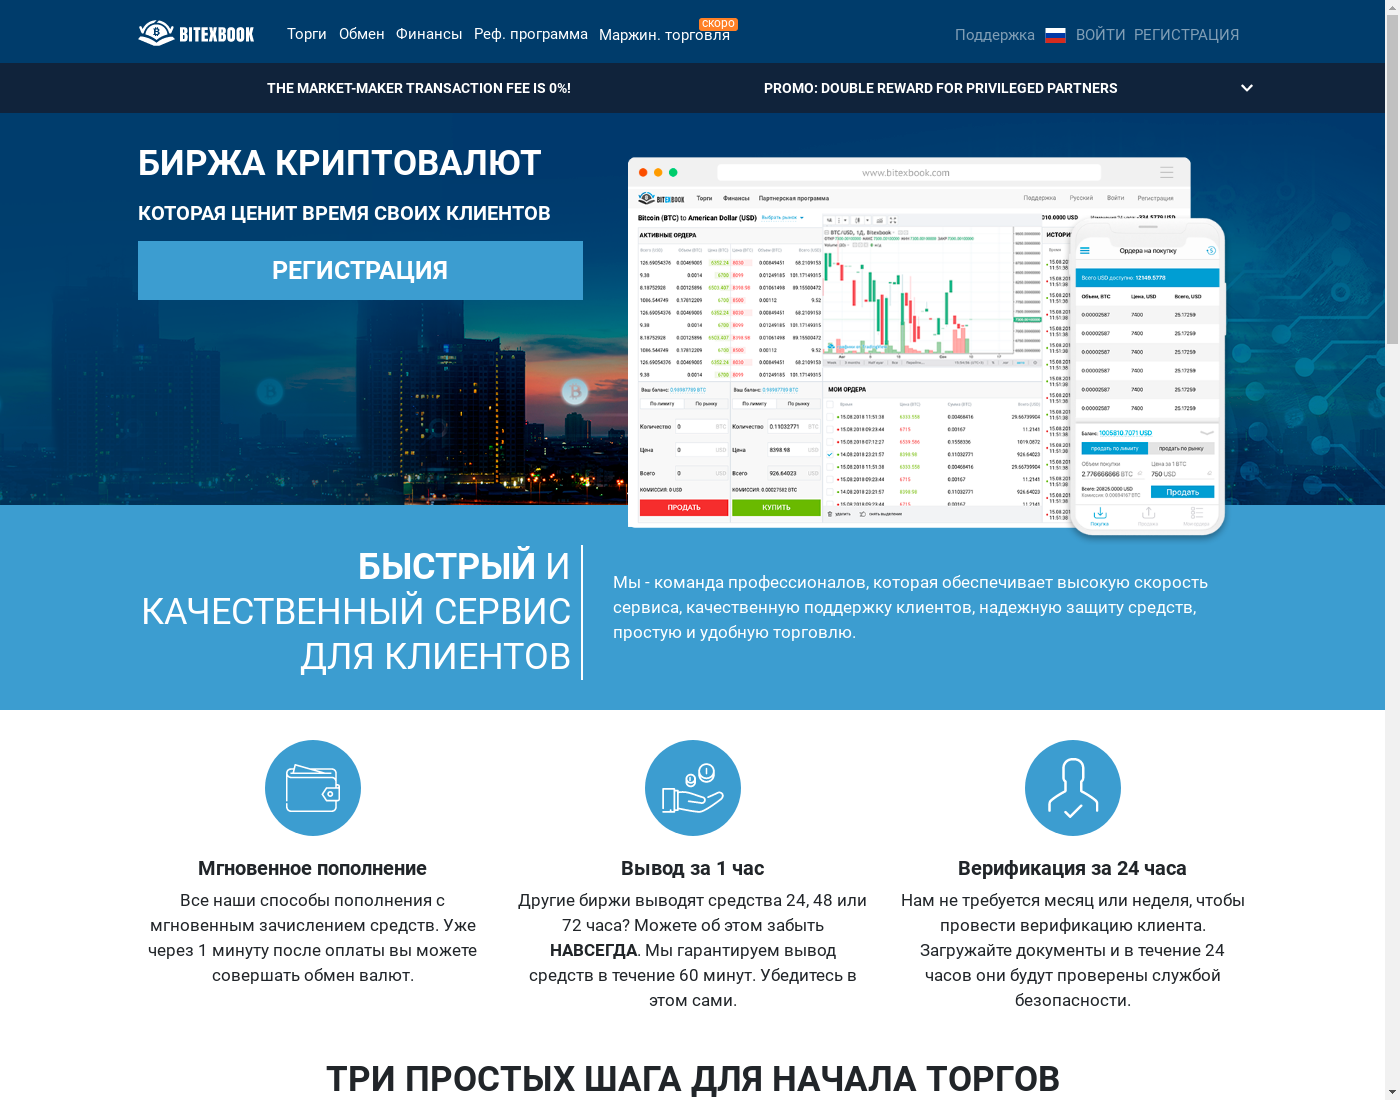 BITEXBOOK интерфейс пользователя: домашняя страничка на языке — Русский